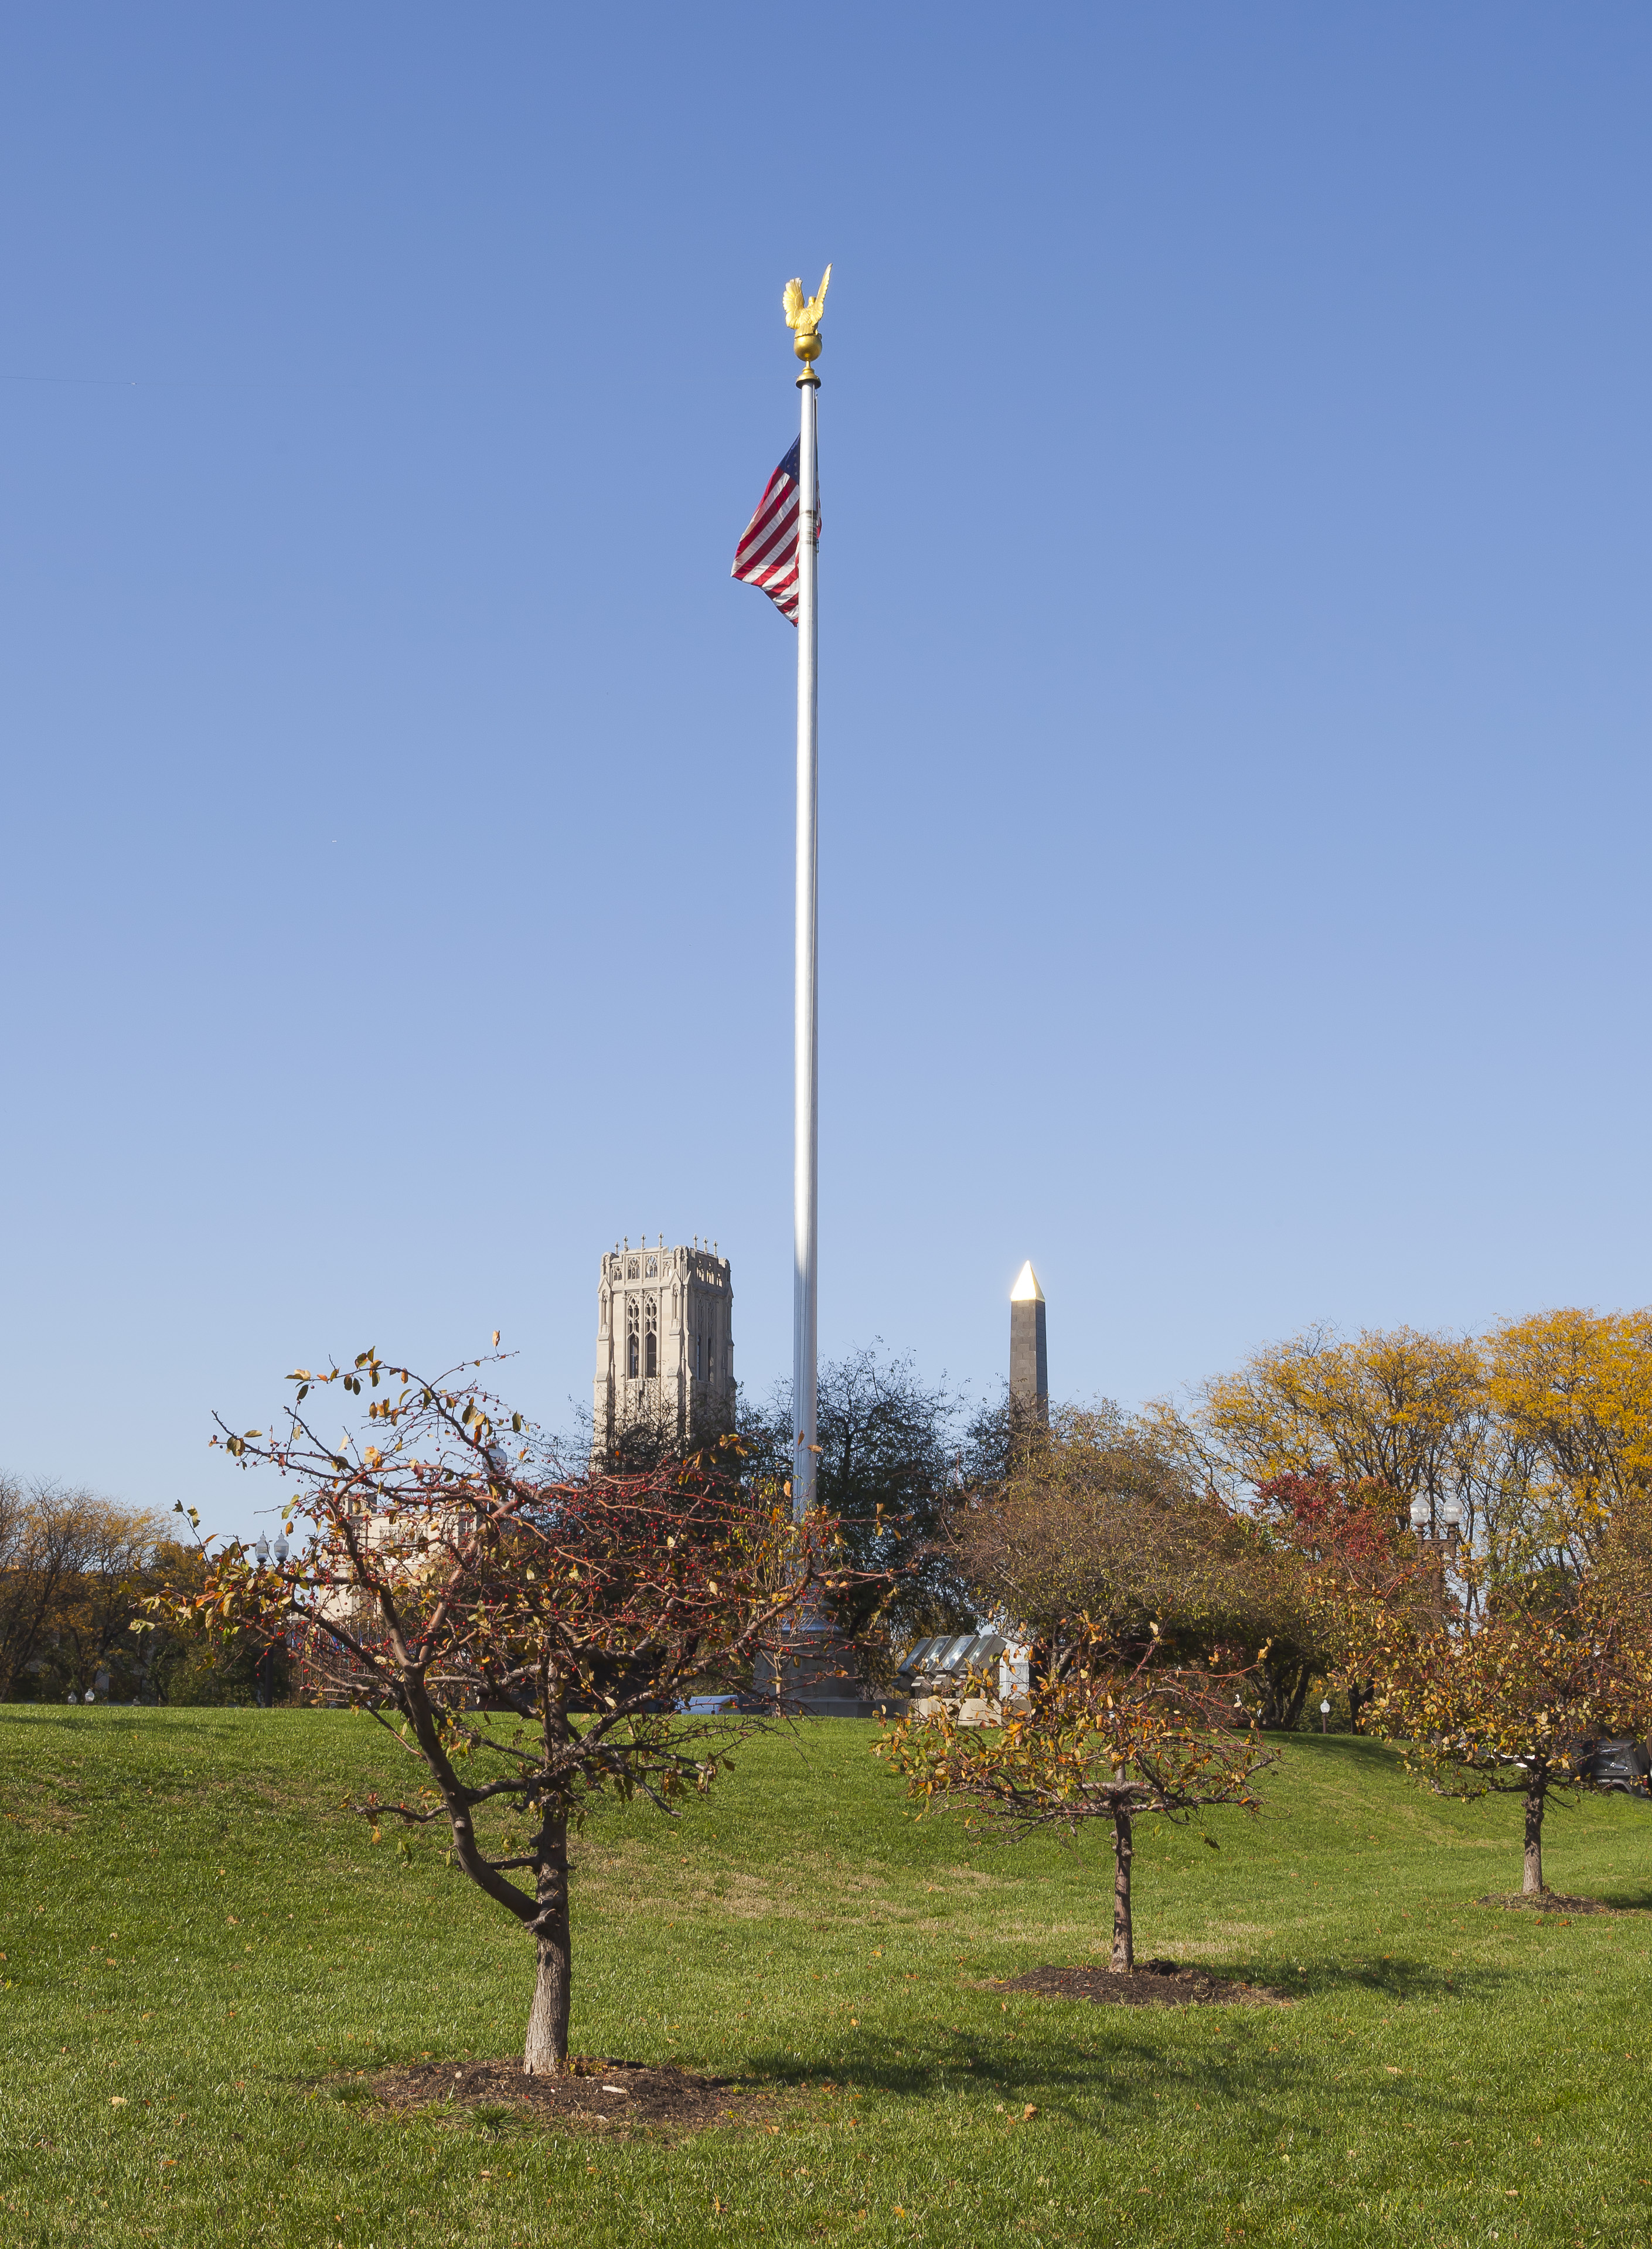 Indiana World War Memorial Plaza, Indianápolis, Estados Unidos, 2012-10-22, DD 08